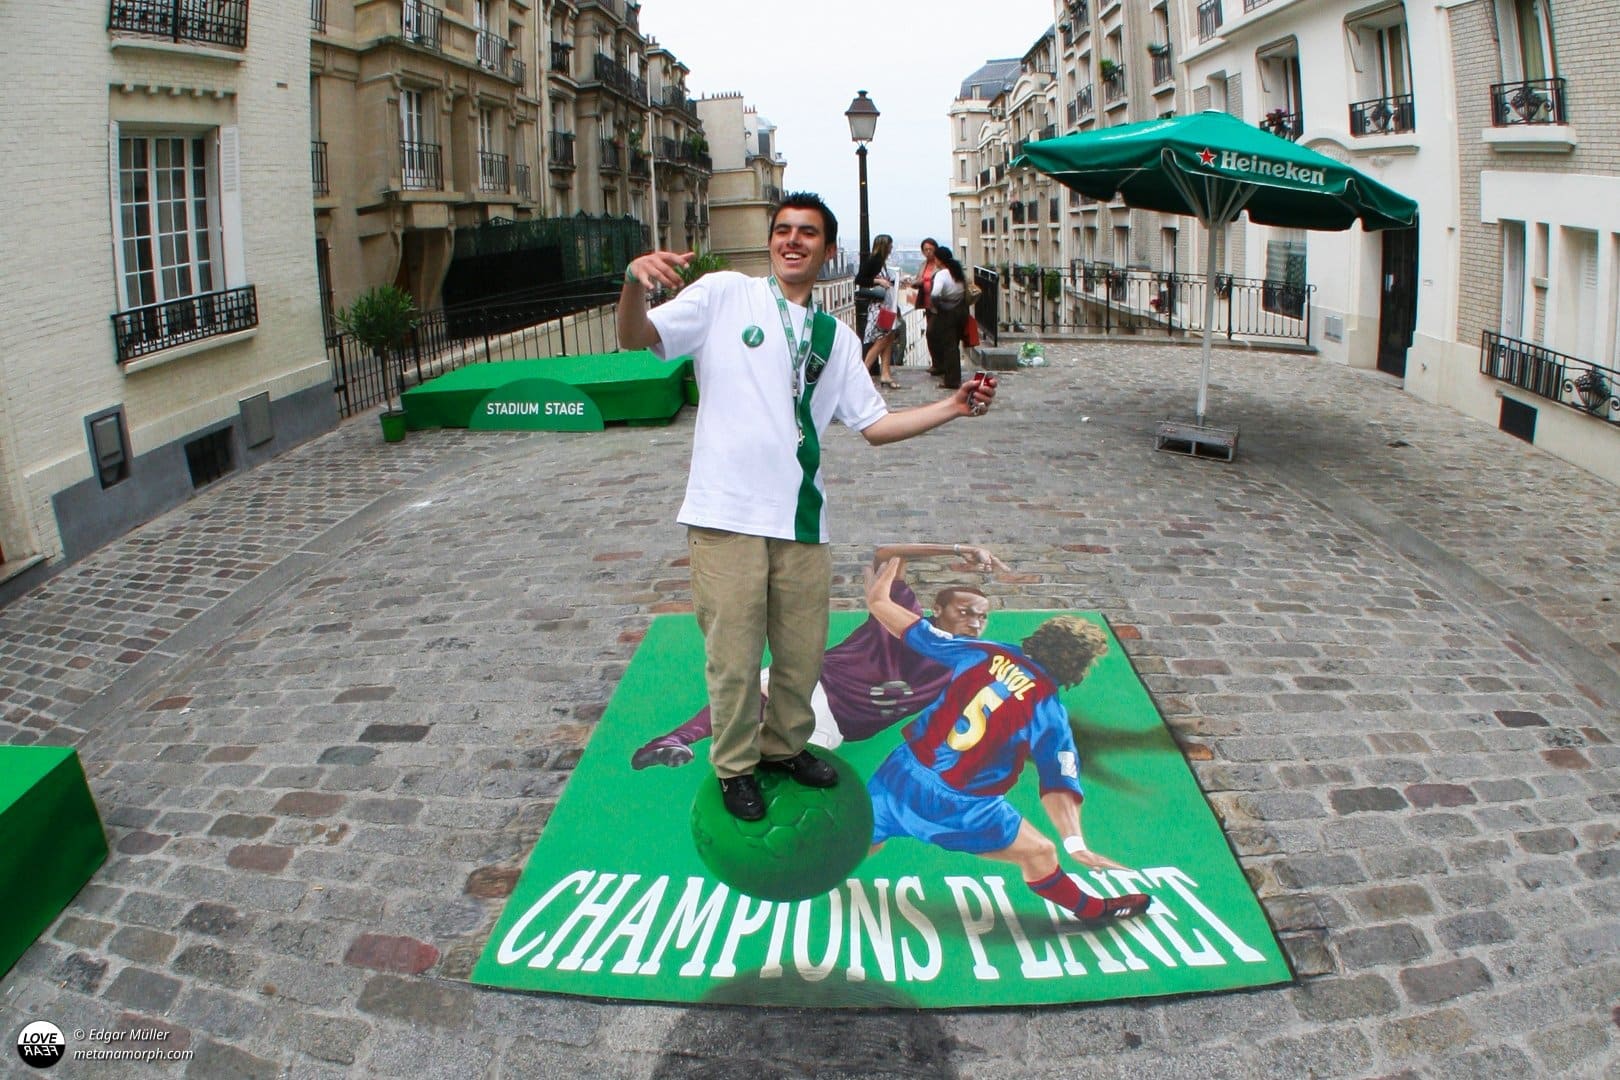 Illusion painting for Champiogns League Paris